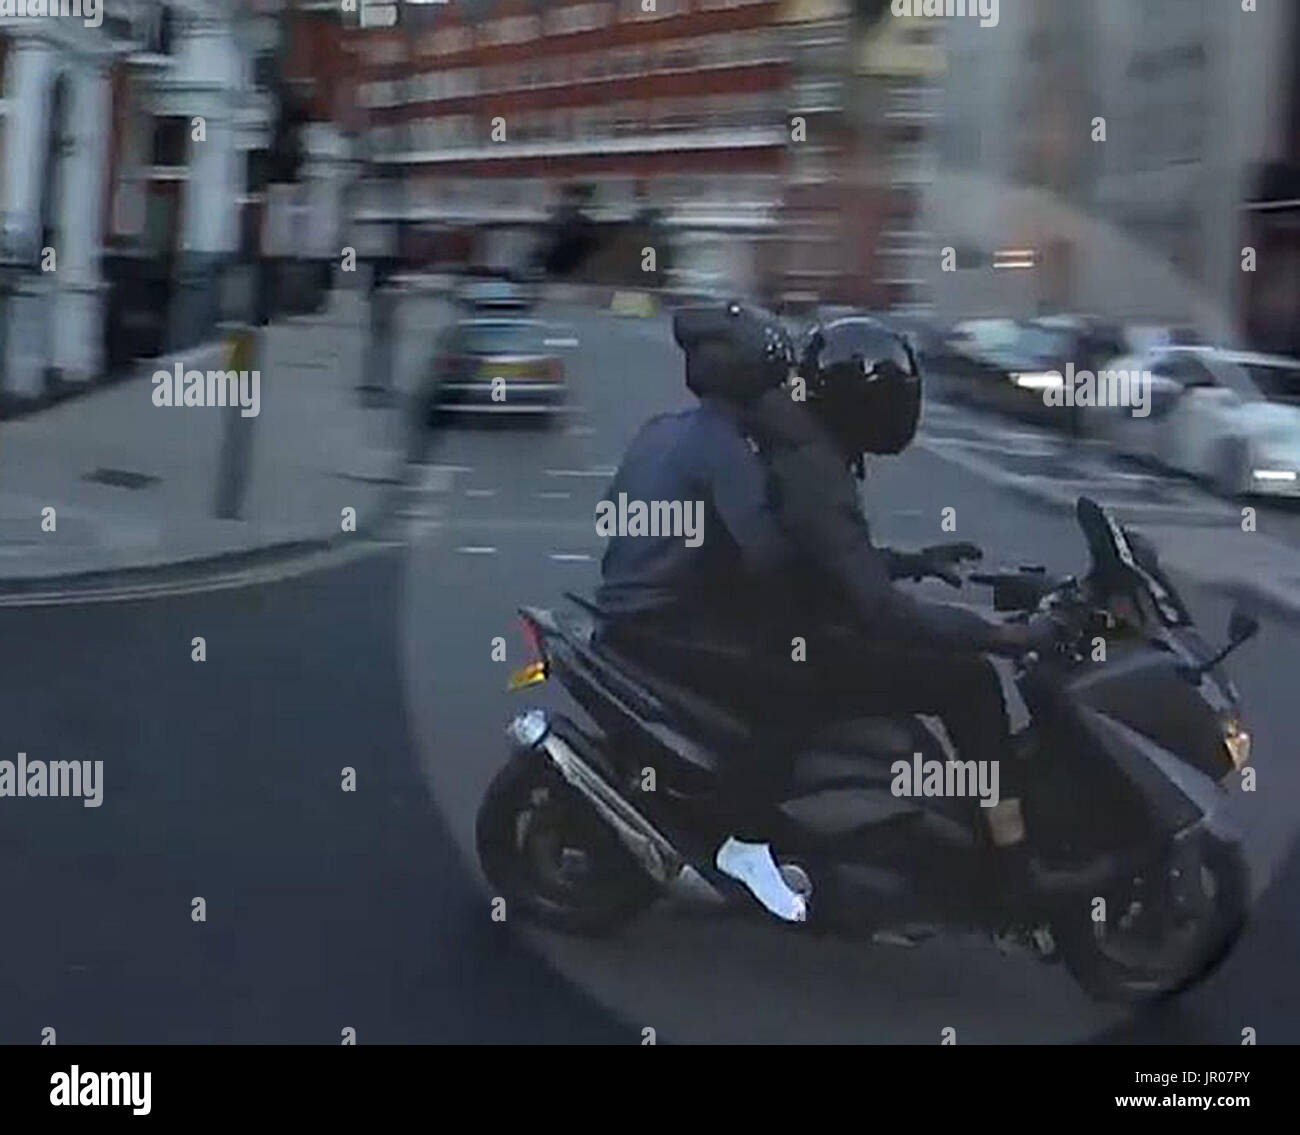 BESTE Qualität verfügbaren Bildschirm packte Aufnahme von Filmmaterial, ausgestellt von der Metropolitan Police der Moped-Reiten-Diebe auf der Flucht nach dem Aufguss eines Mannes mit Flüssigkeit in der Nähe der Londoner Kaufhaus Harrods. Stockfoto